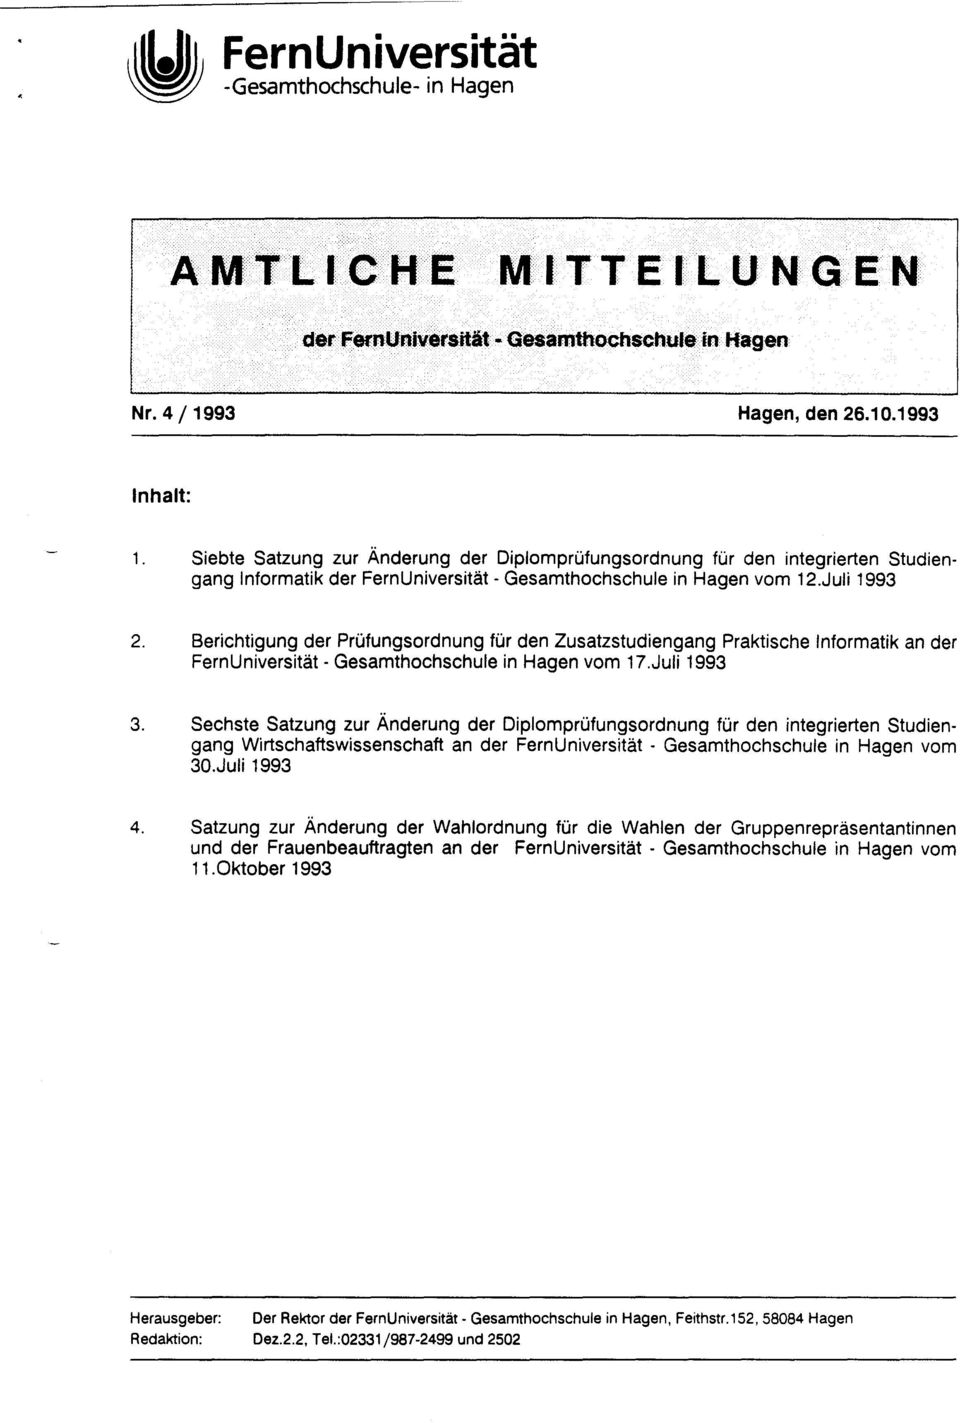 Berichtigung der Prüfungsordnung für den Zusatzstudiengang Praktische Informatik an der FernUniversität - Gesamthochschule in Hagen vom 17.Juli 1993 3.